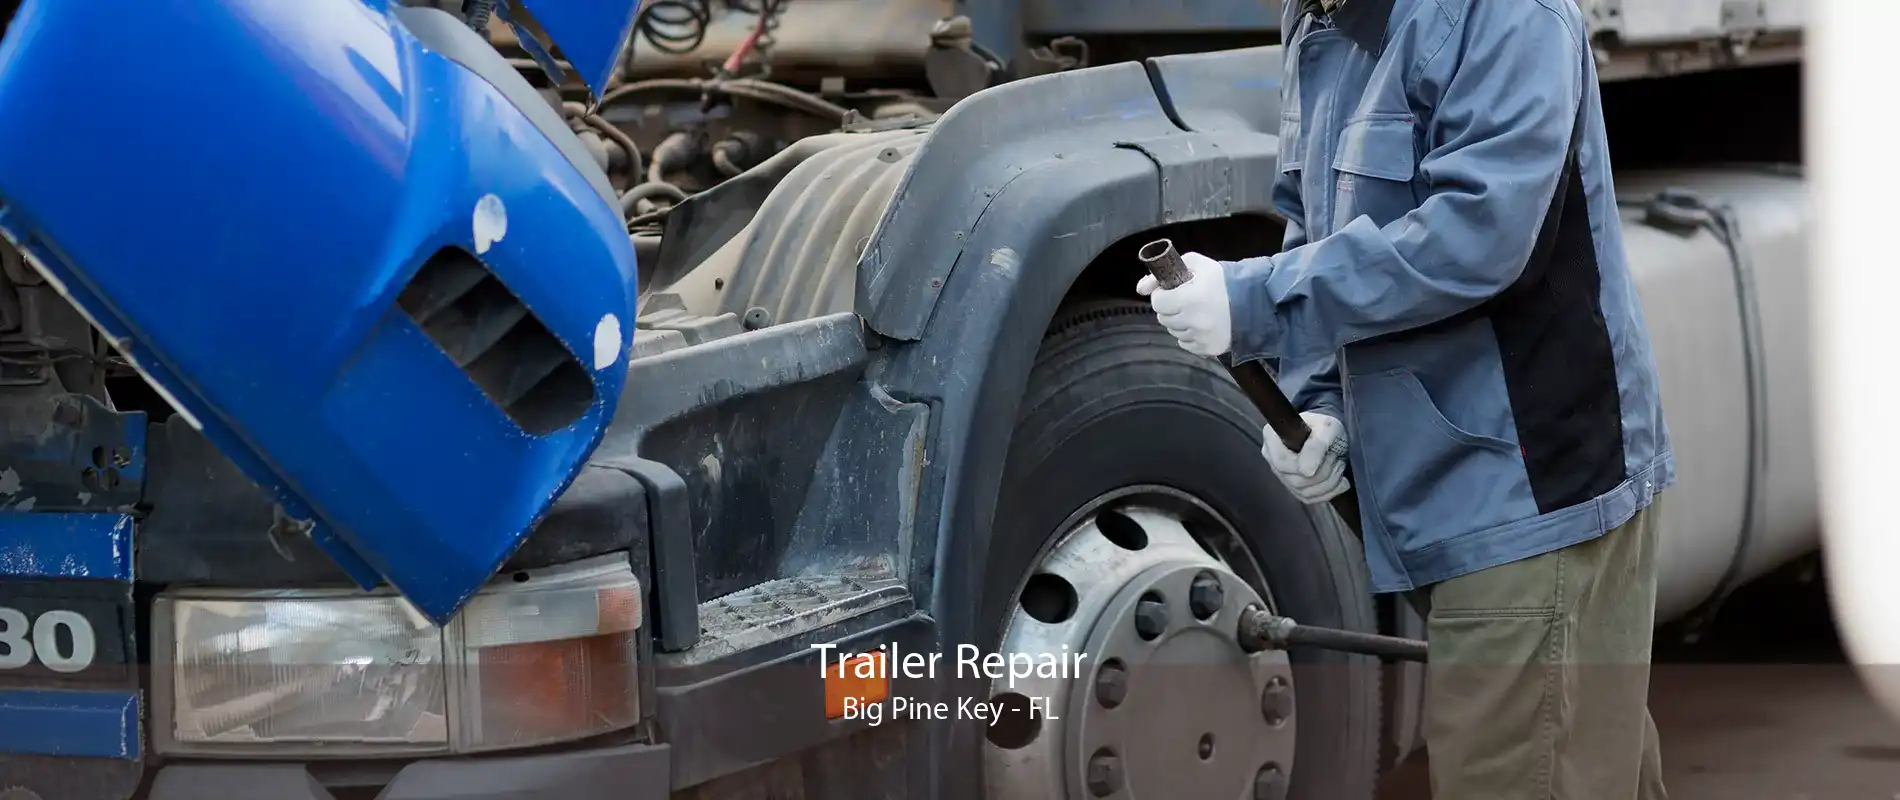 Trailer Repair Big Pine Key - FL